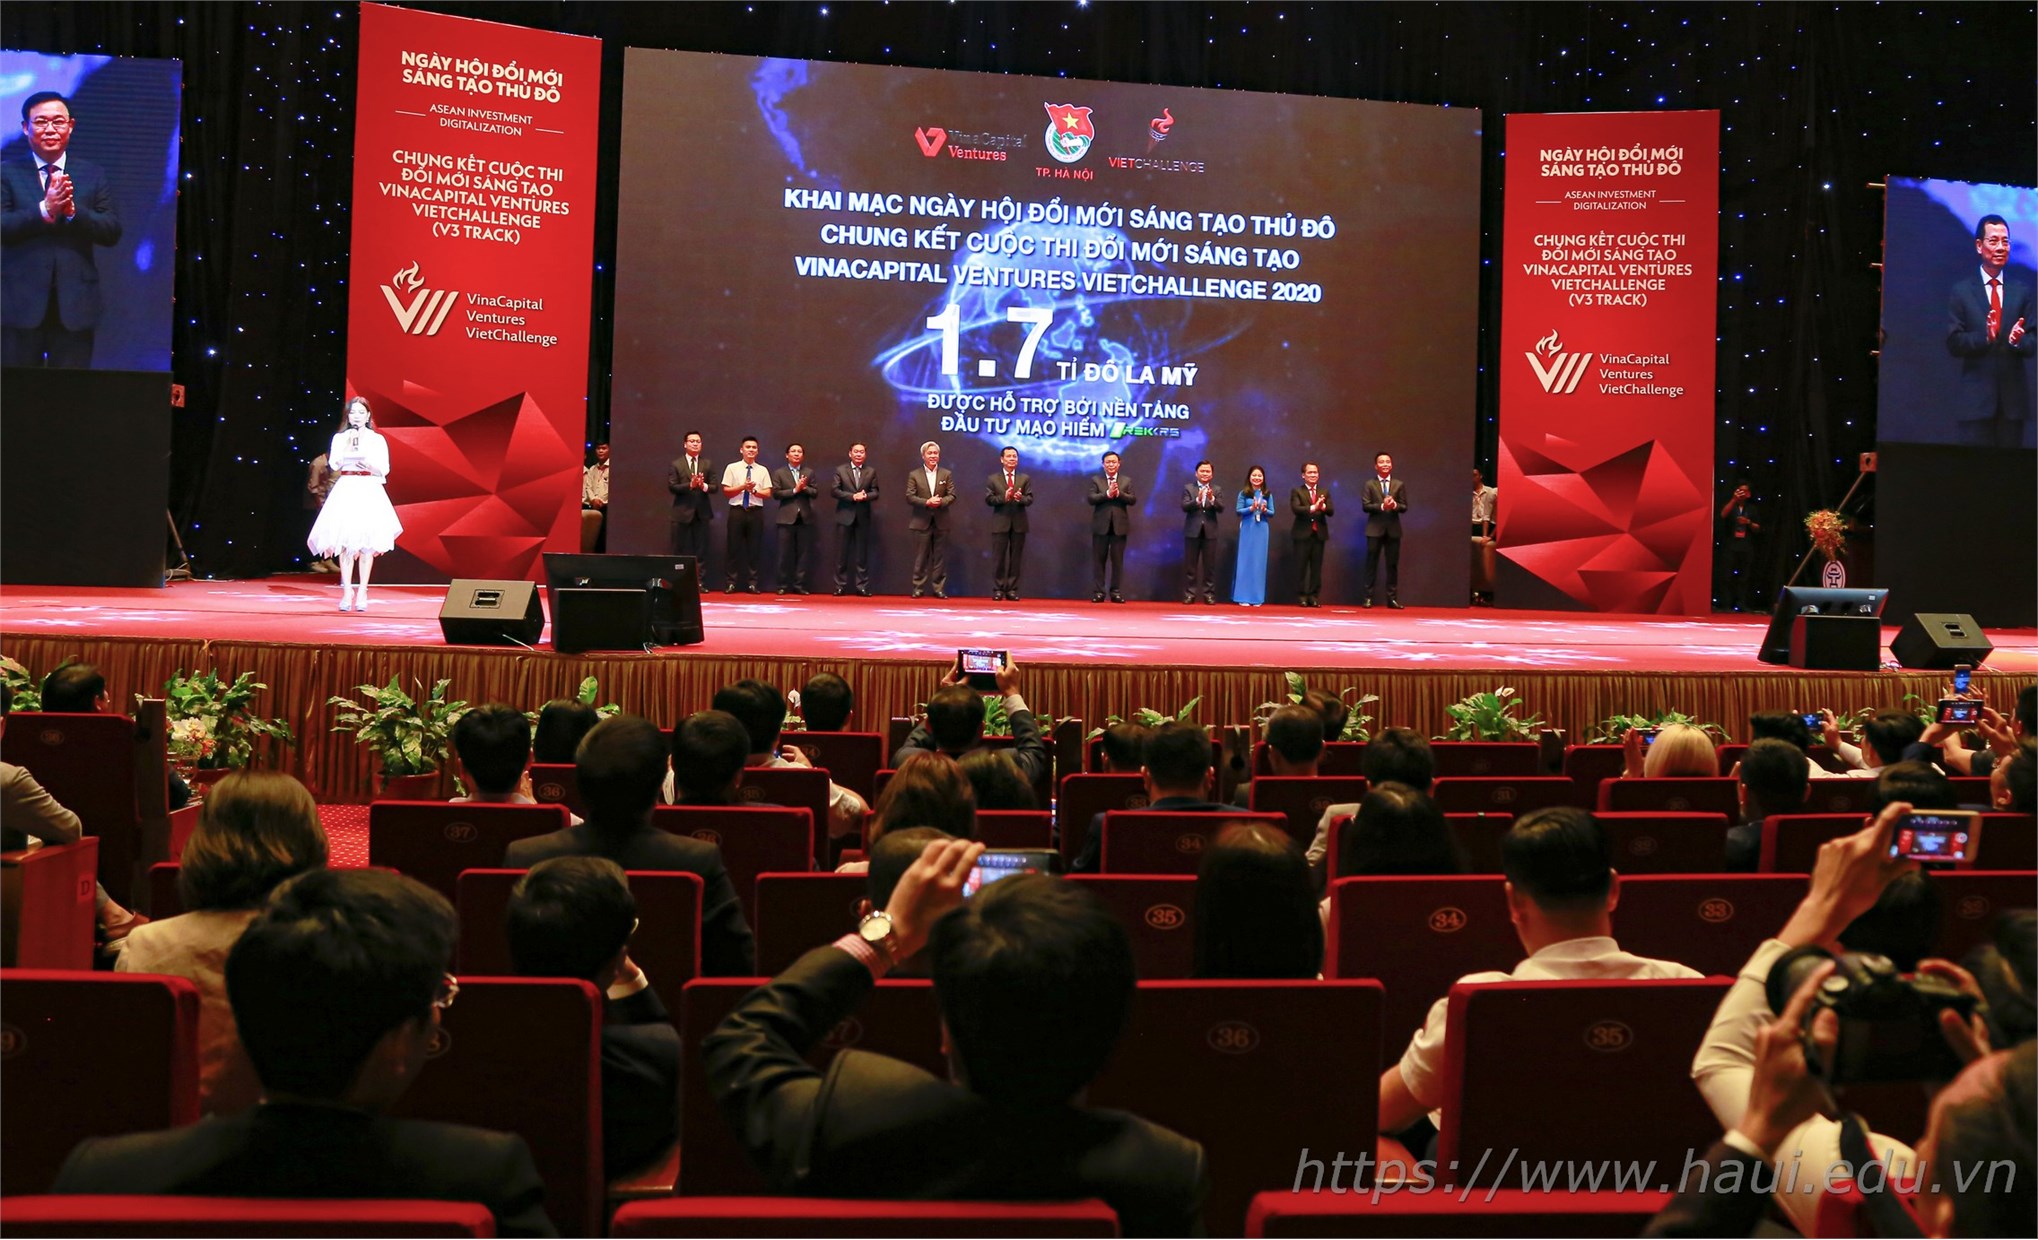 Đại học Công nghiệp Hà Nội tham gia mạng lưới Đổi mới sáng tạo Thủ đô